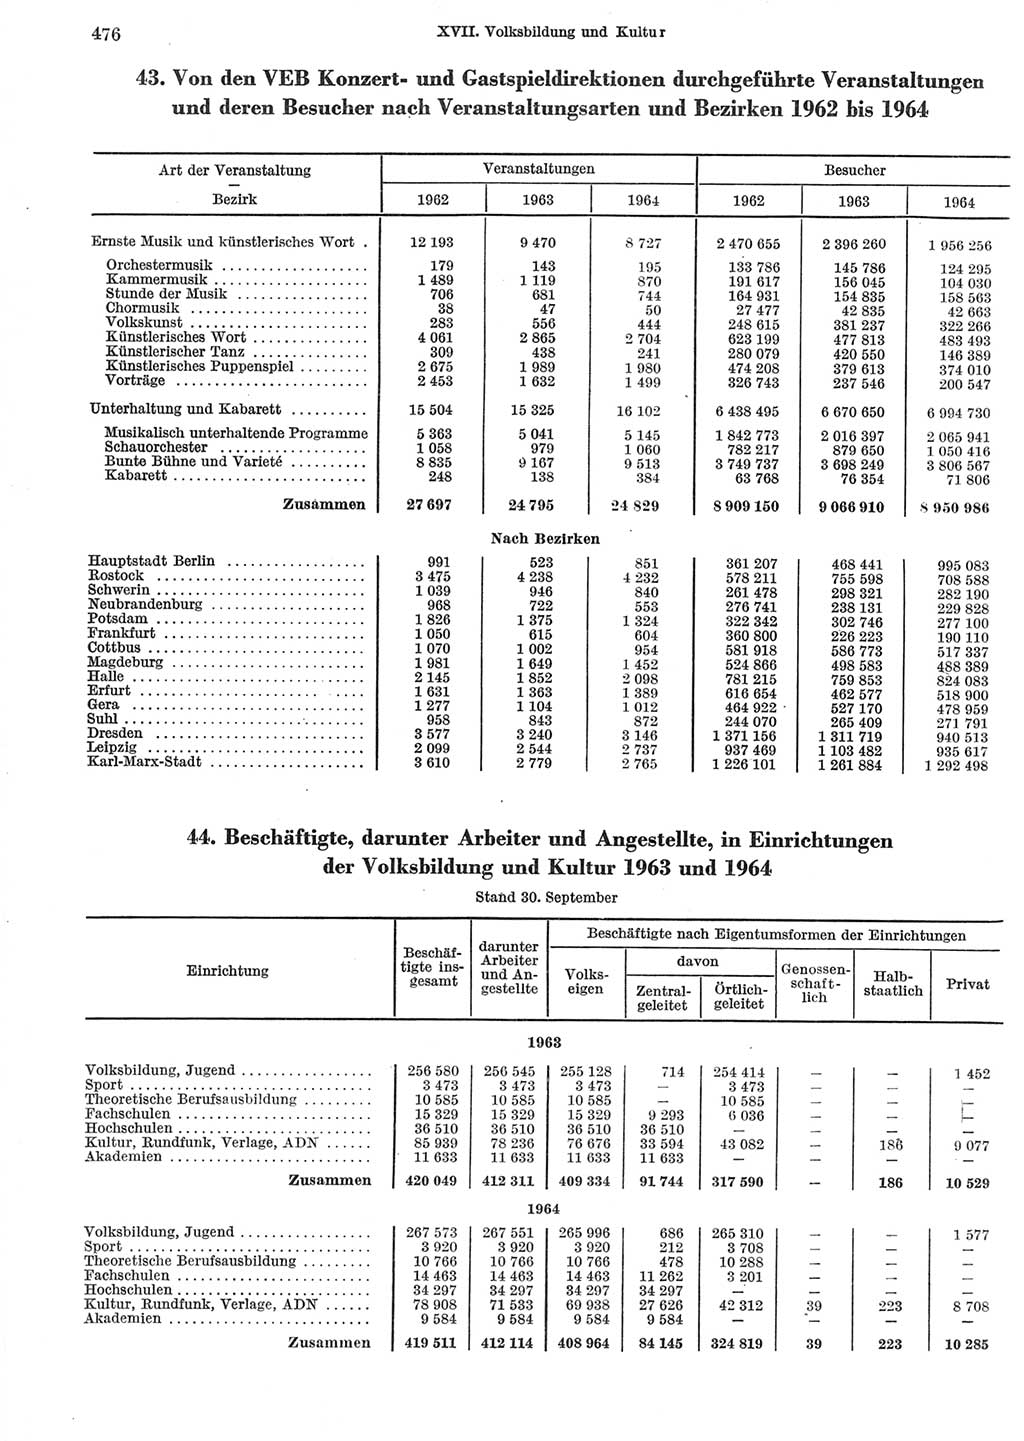 Statistisches Jahrbuch der Deutschen Demokratischen Republik (DDR) 1965, Seite 476 (Stat. Jb. DDR 1965, S. 476)